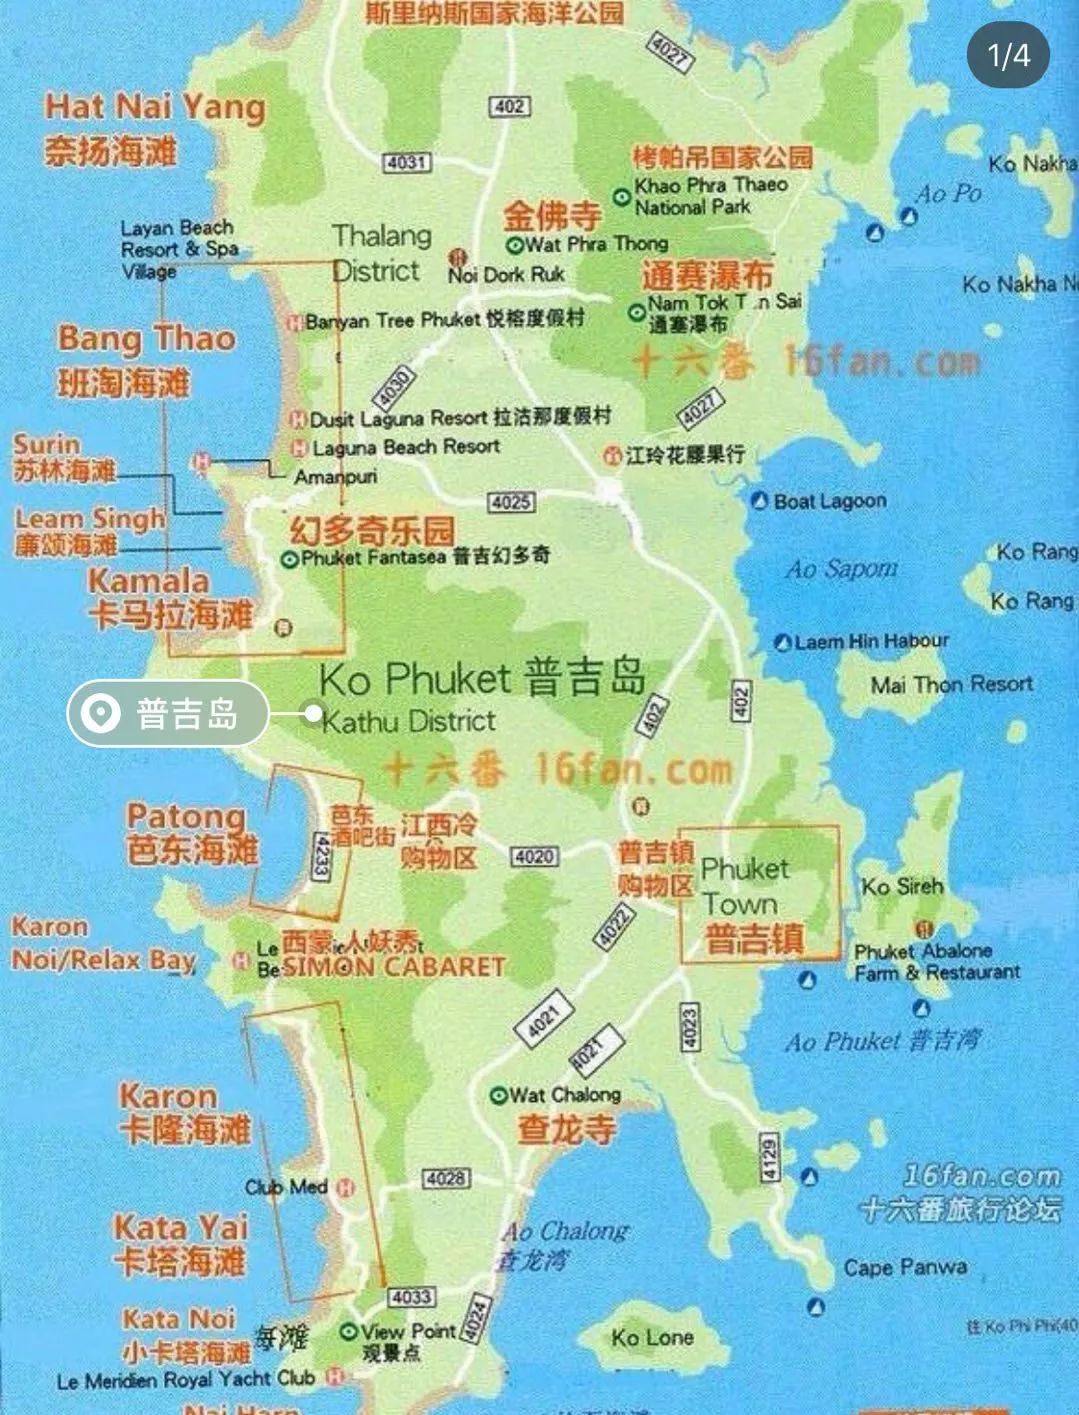 泰国地图高清中文版 - 泰国地图 - 地理教师网